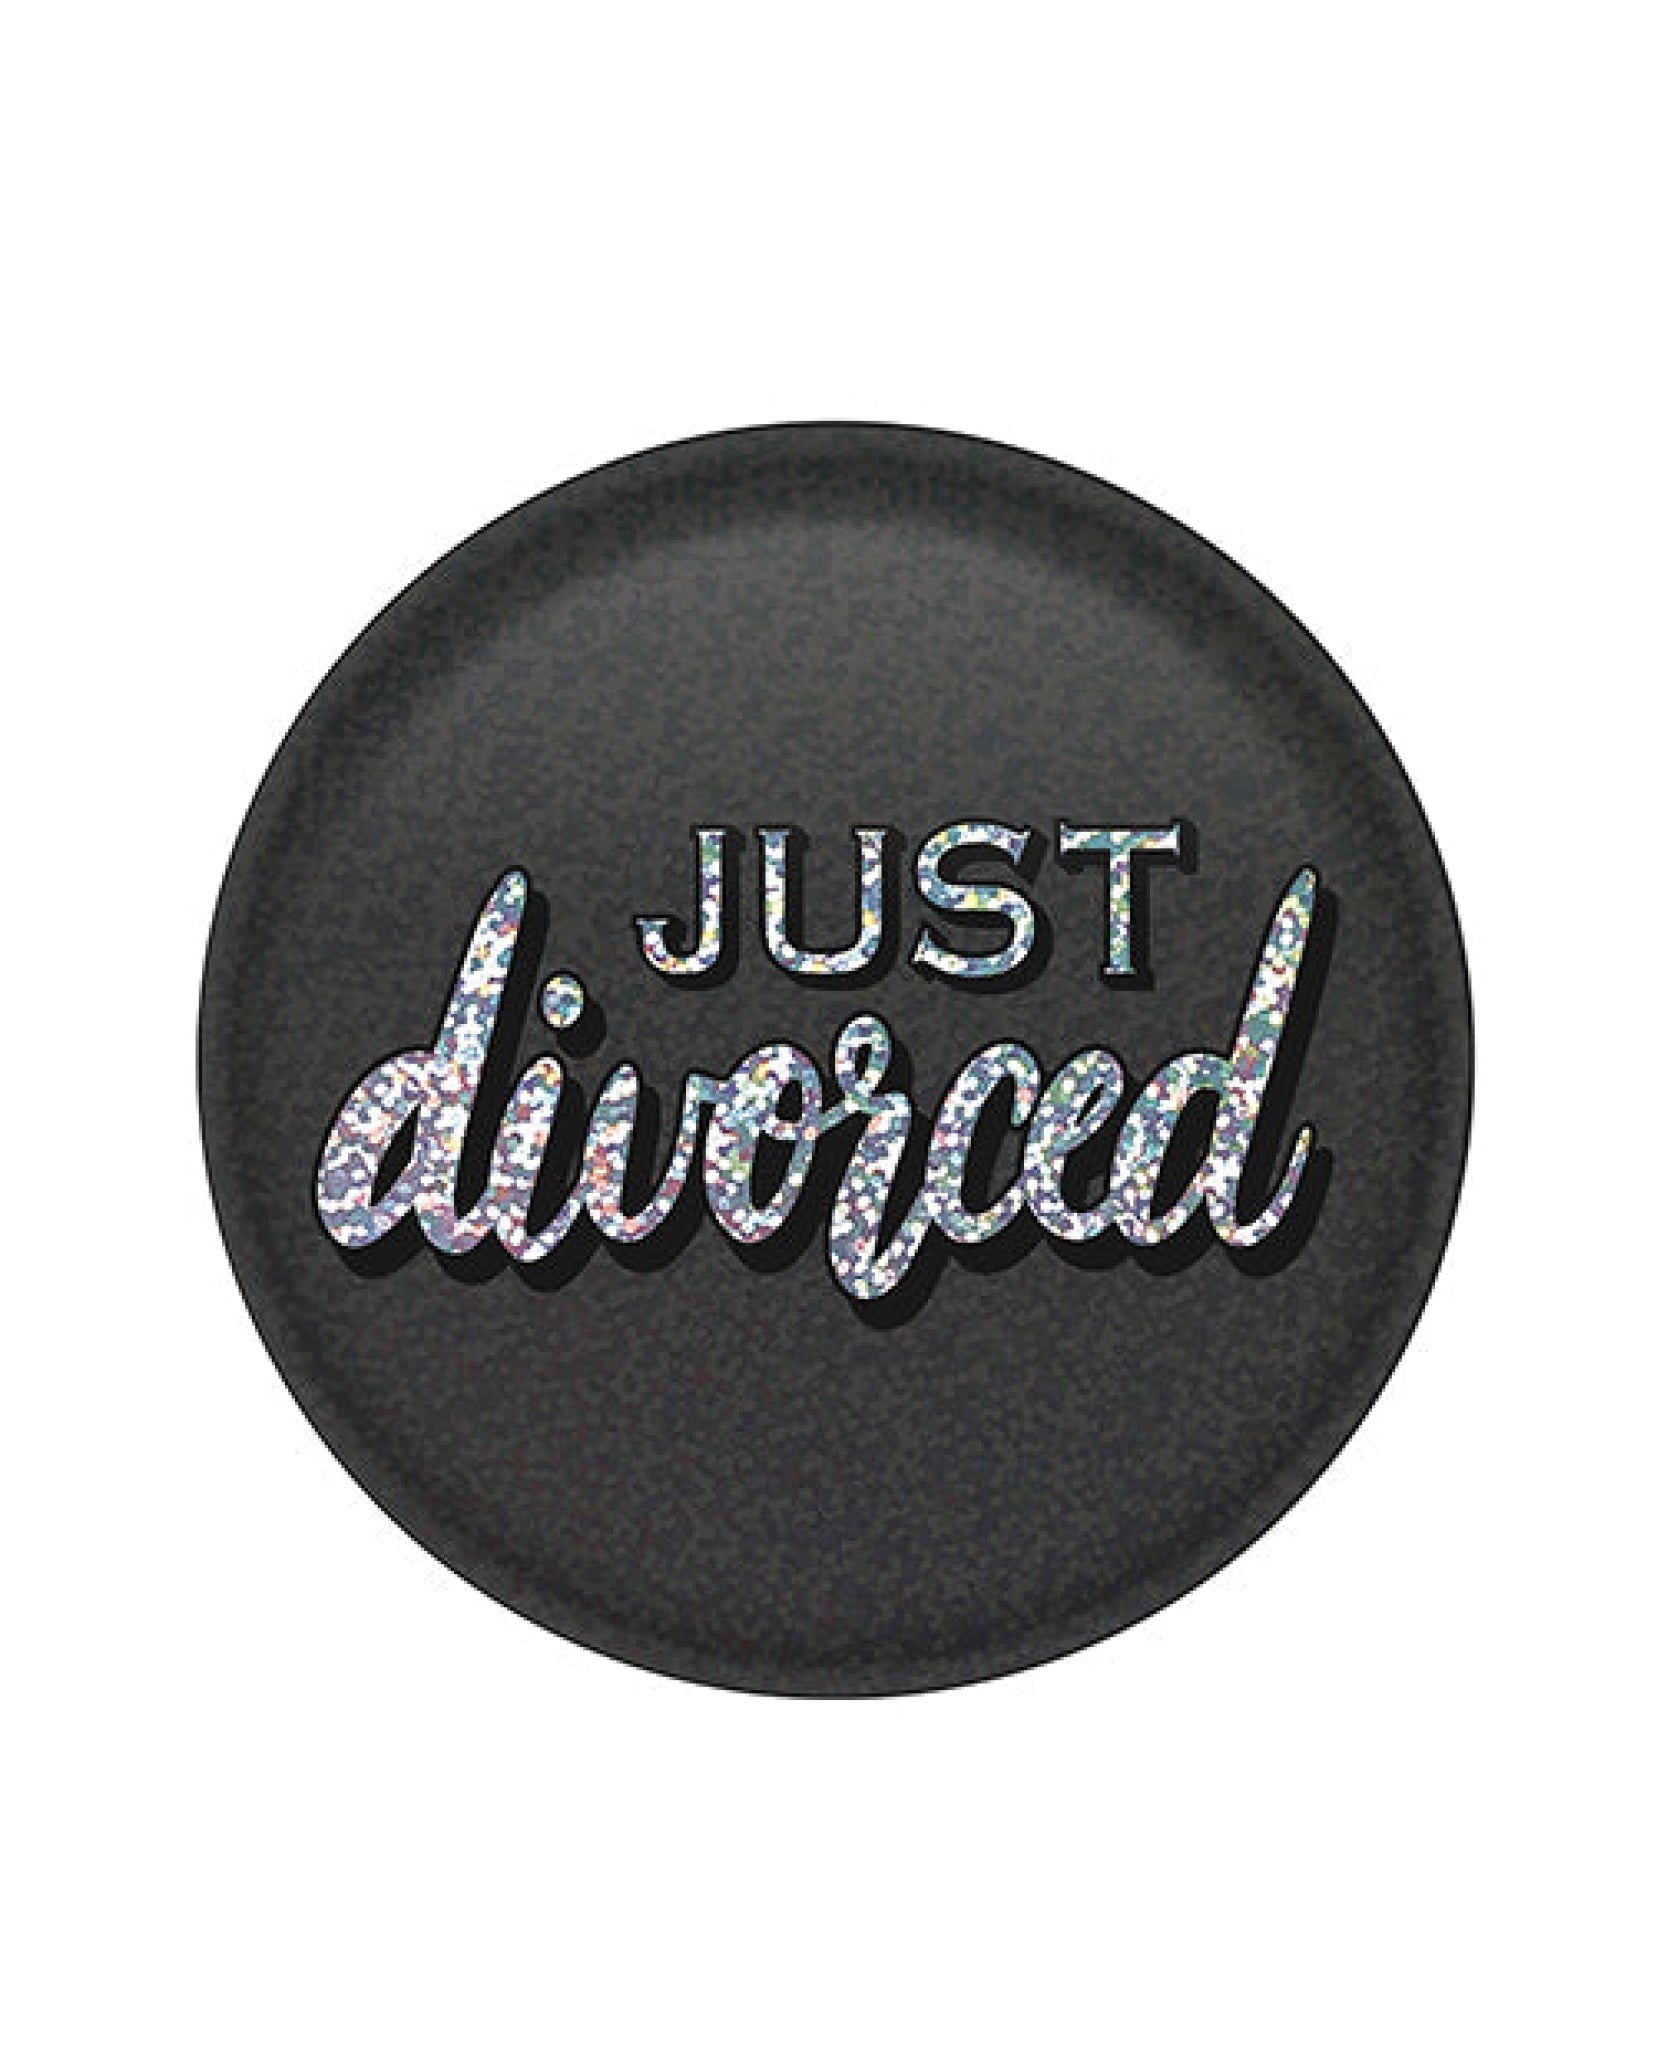 Just Divorced Button Beistle